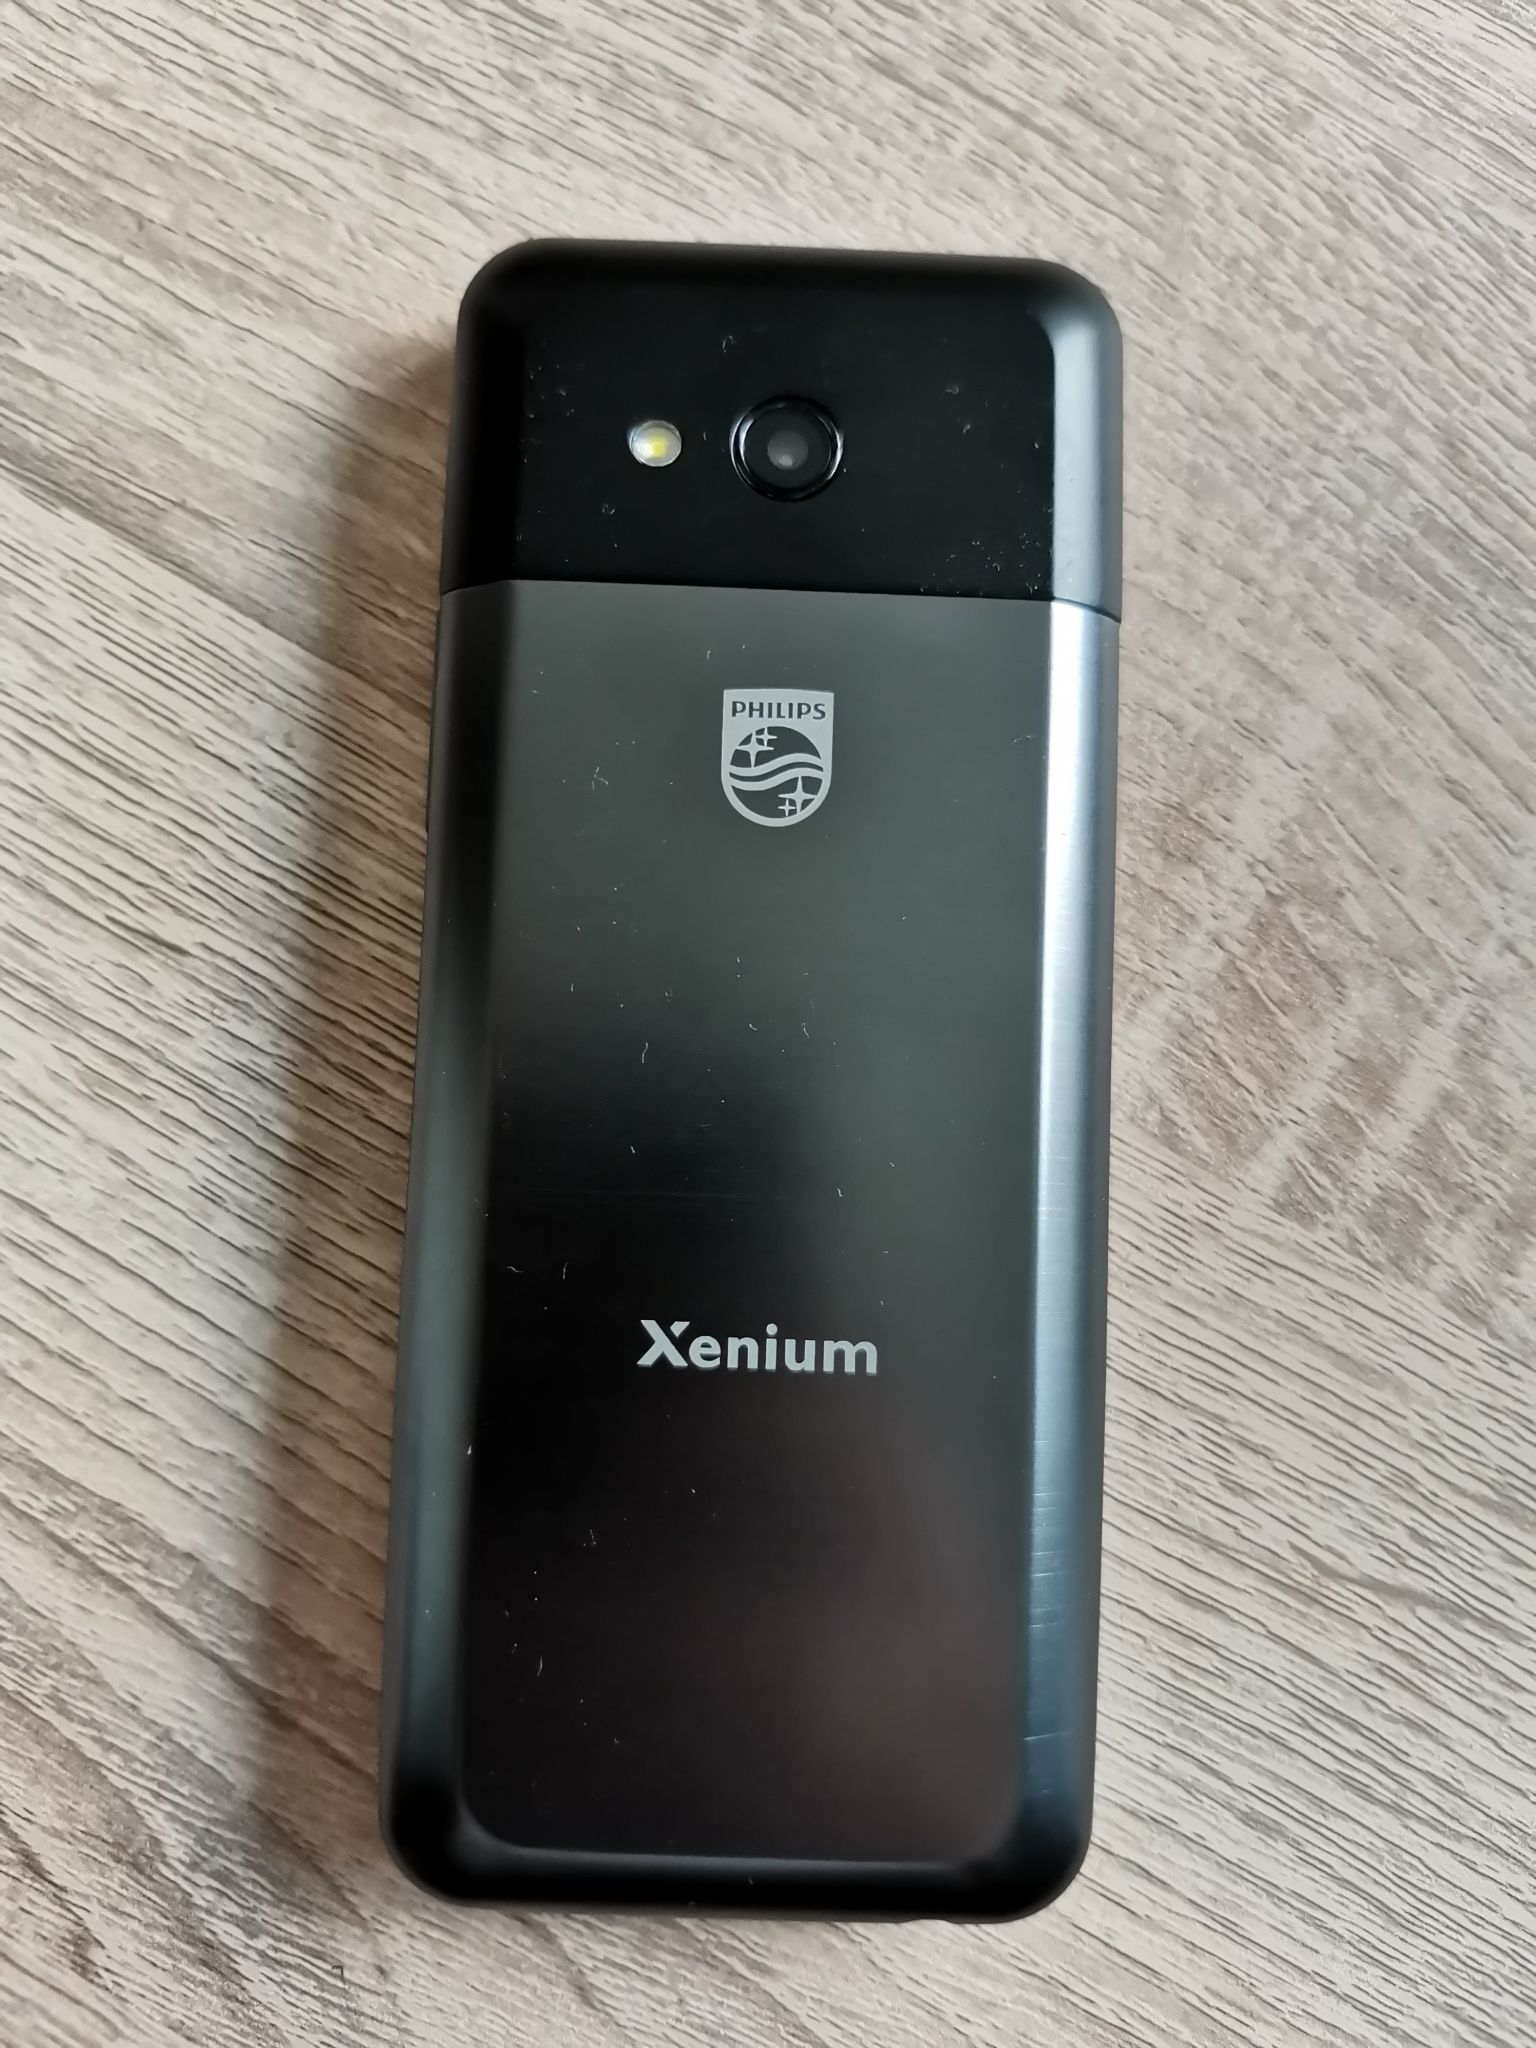 Мобильный телефон xenium e590. Philips Xenium e590. Мобильный телефон Philips Xenium e590 Black. Philips Xenium e590 Black (черный). Мобильный телефон Philips Xenium e590 Black размер.